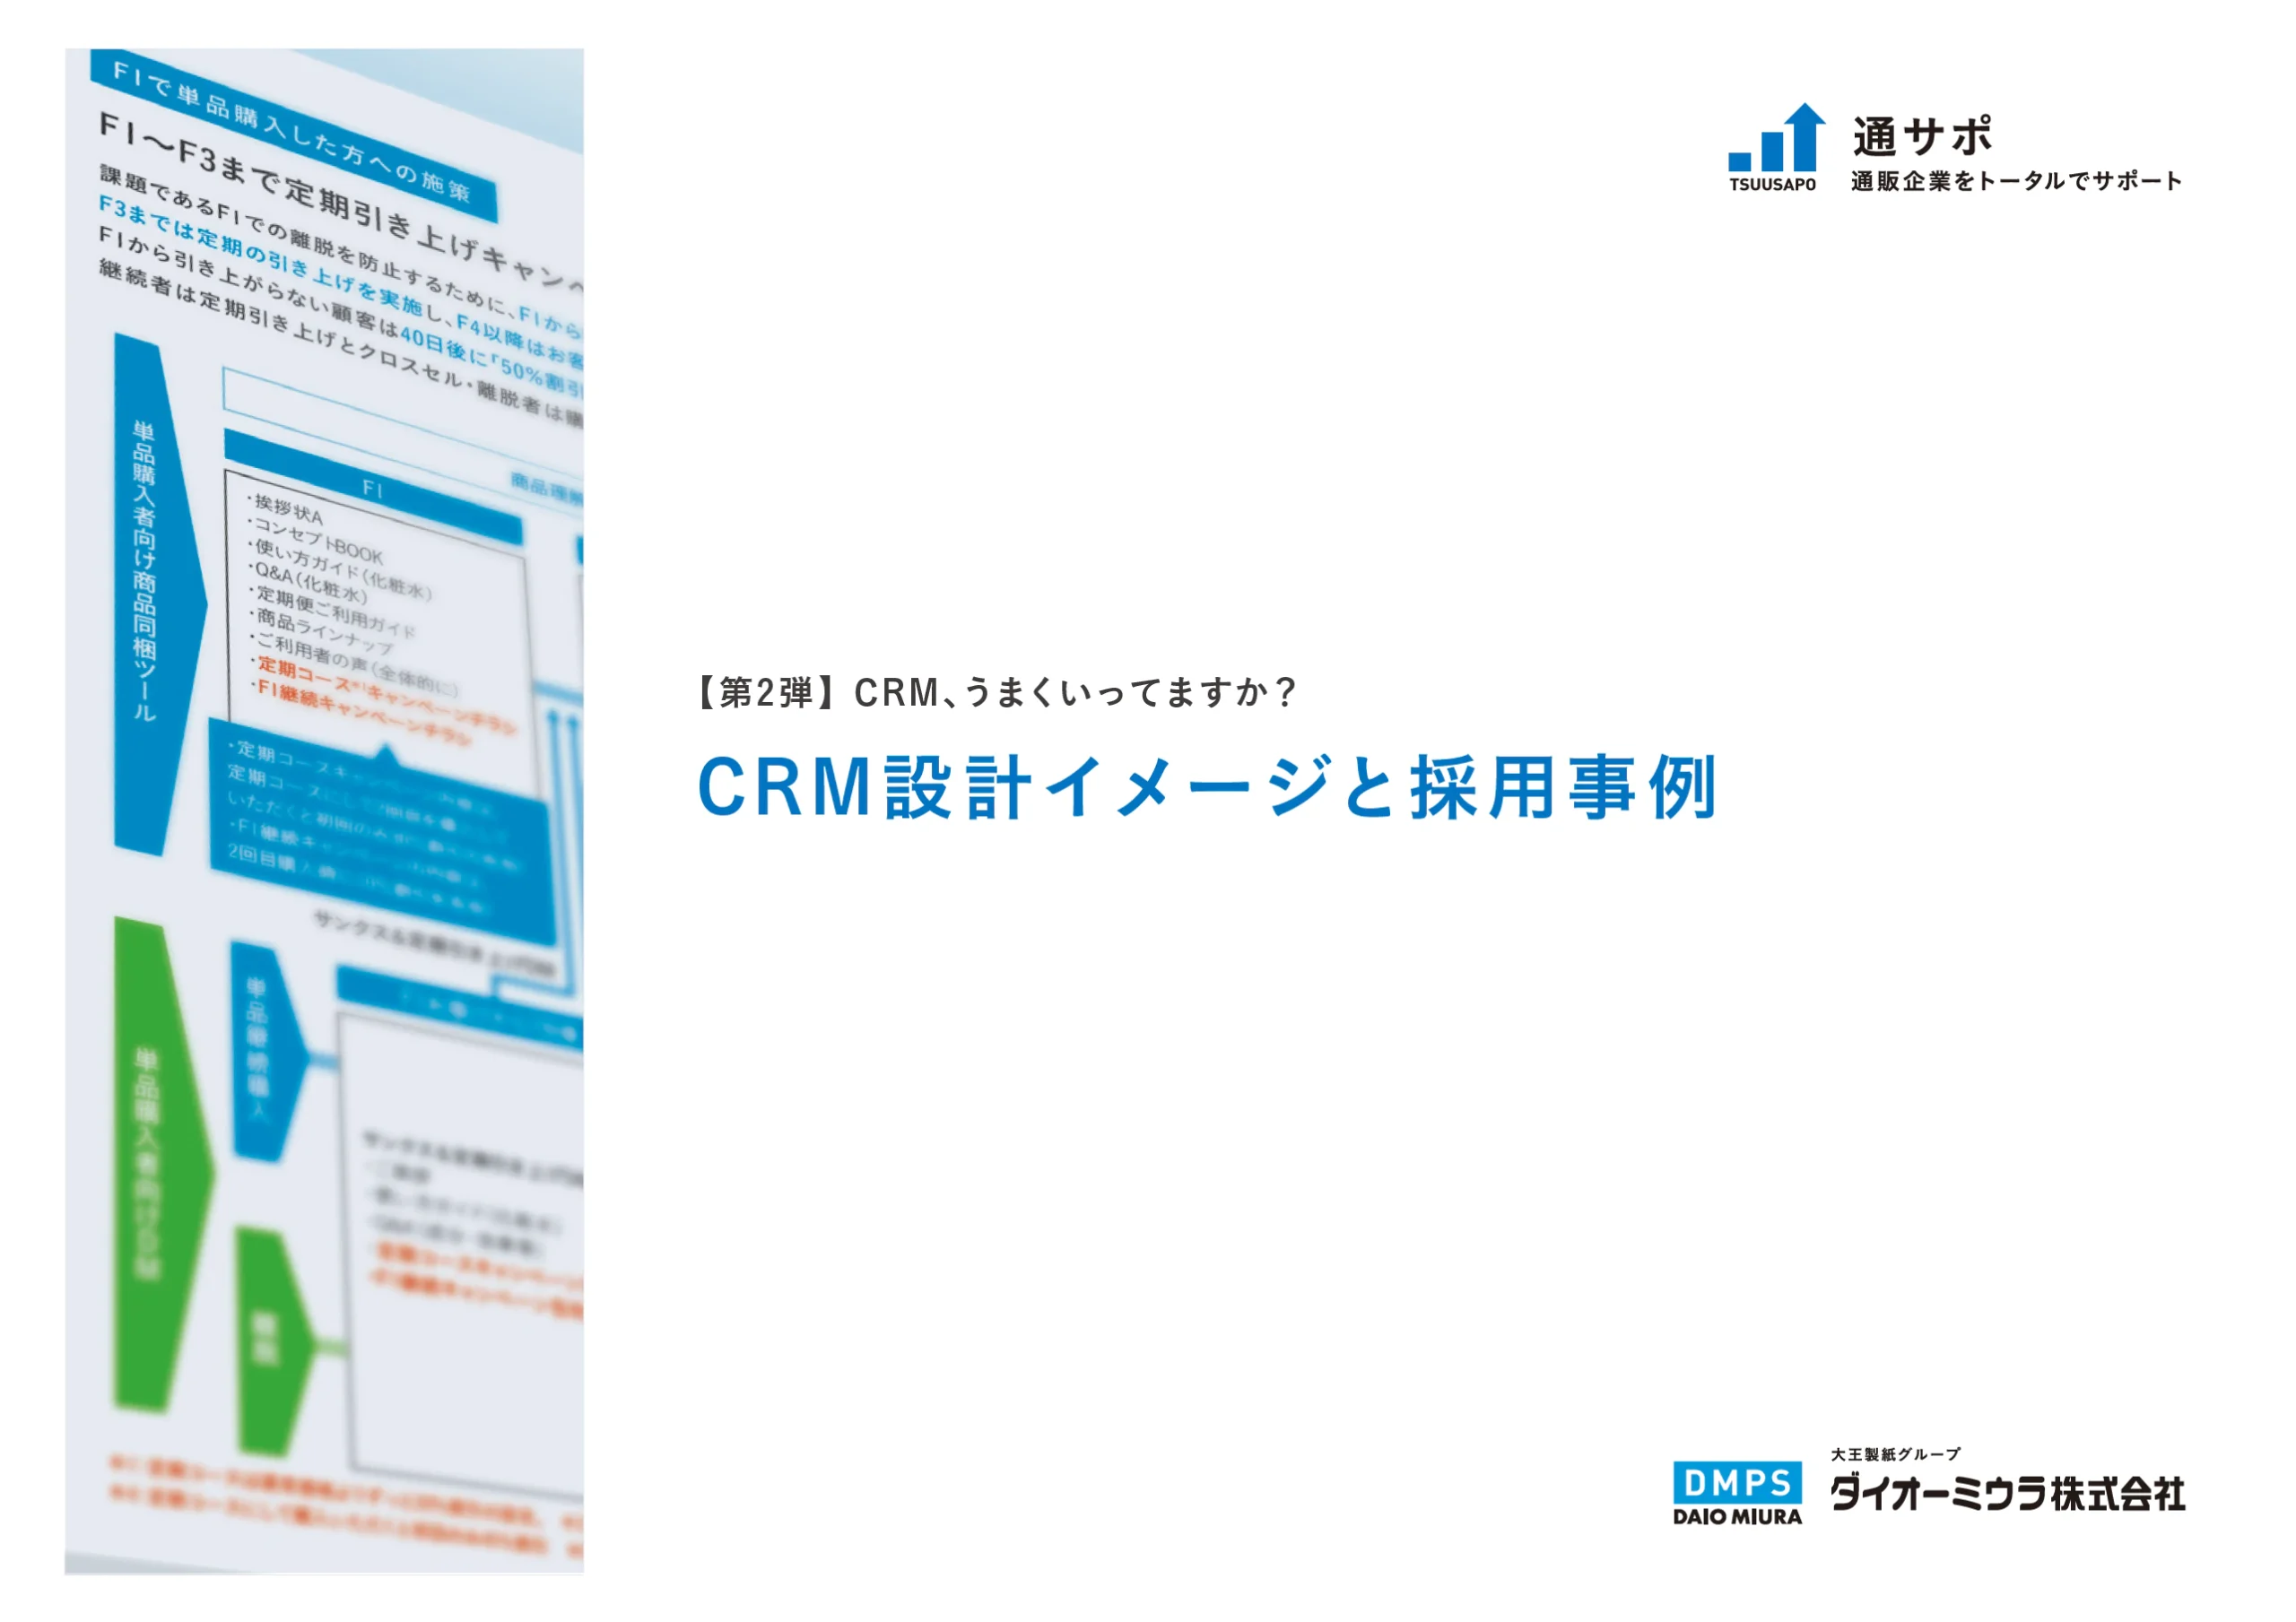 通サポ資料請求-CRM設計イメージと採用事例